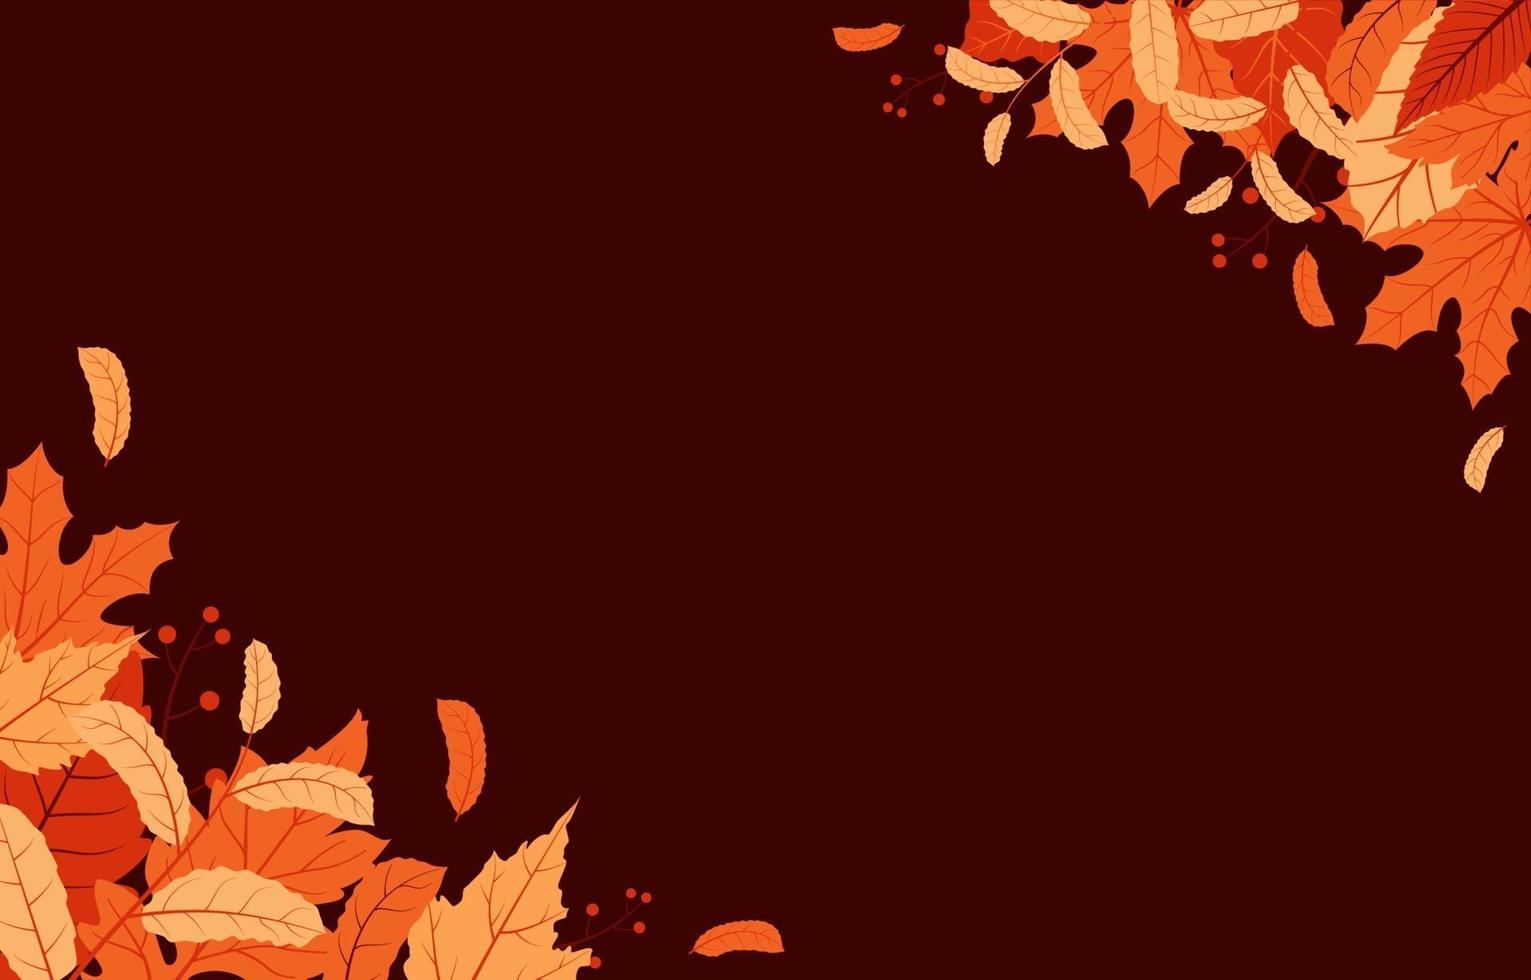 fundo da temporada de outono com folhas vermelhas e amarelas vetor